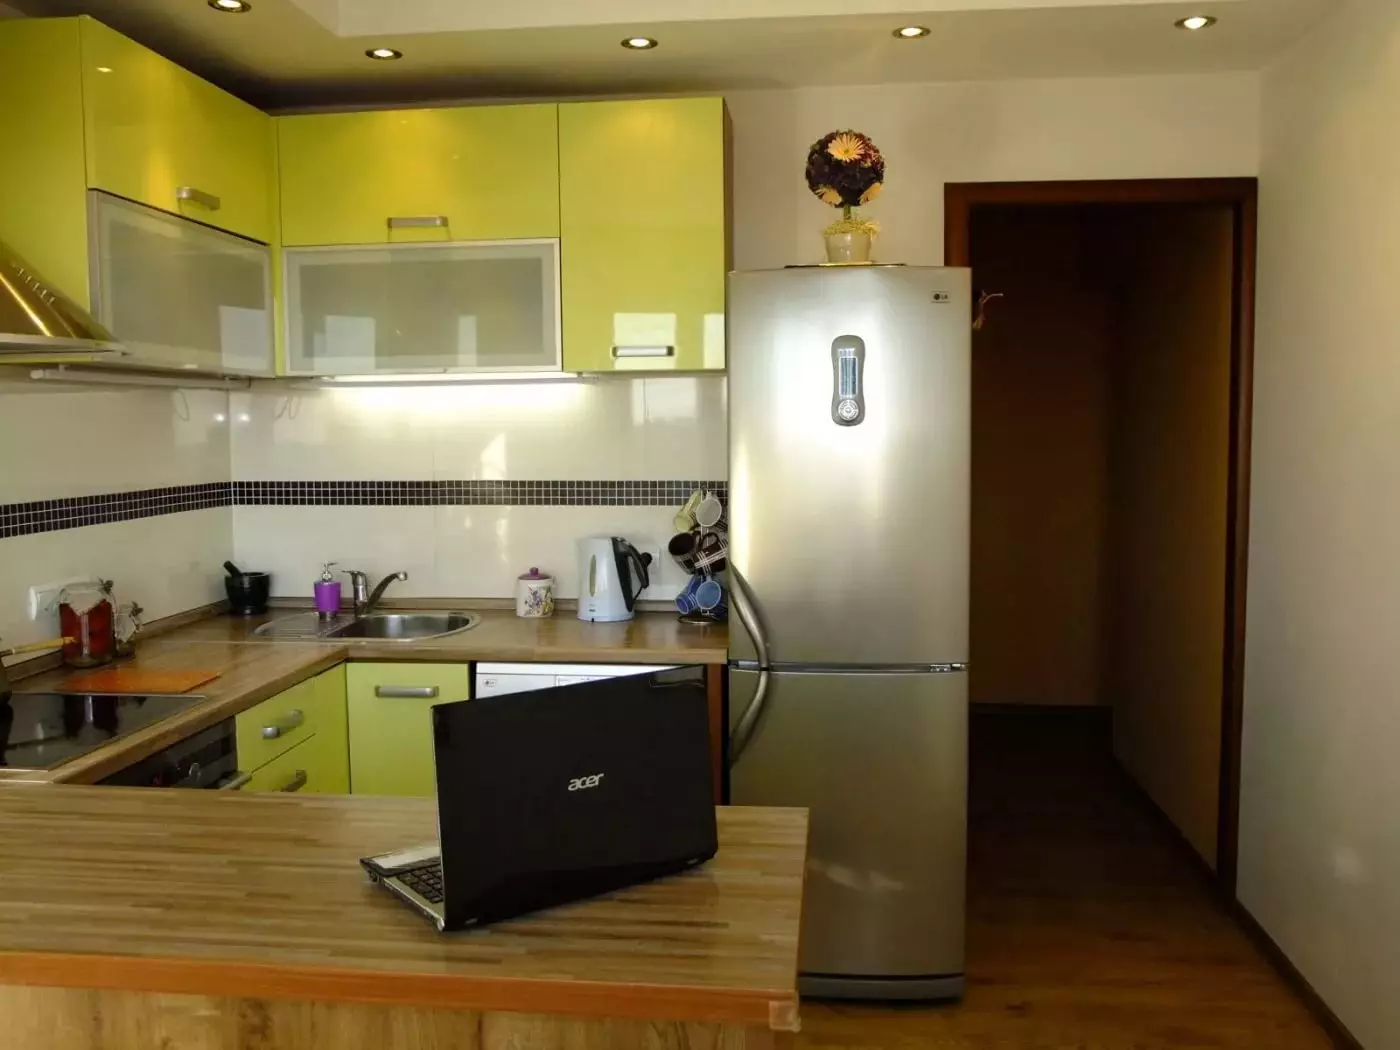 厨房设计9平方米，冰箱（67张照片）：有趣的项目和室内选择。如何容纳必要的家具？ 9432_18